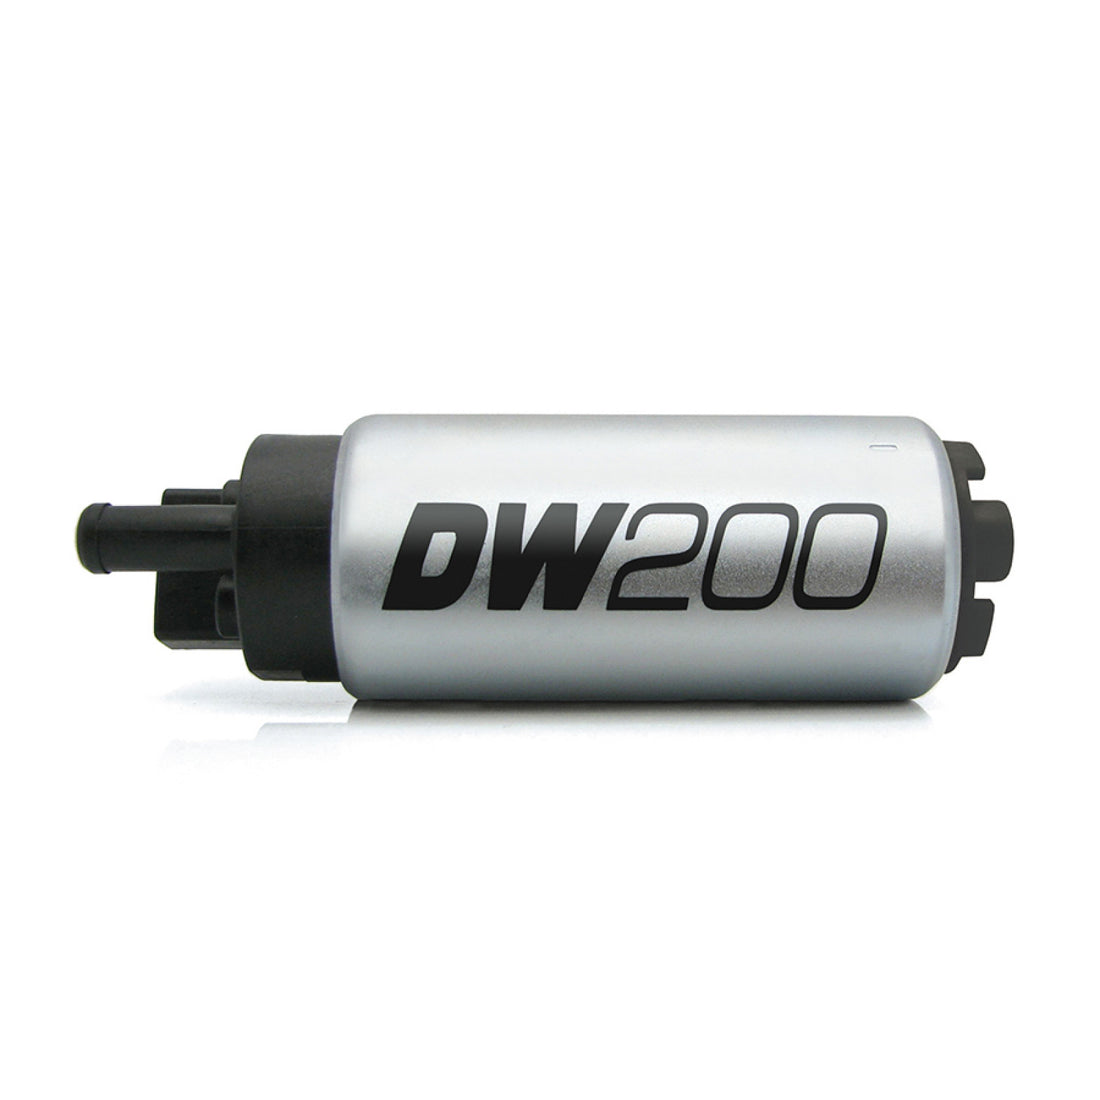 Deatschwerks DW200 255lph Fuel Pump for 94-97/ 99-05 Mazda Miata